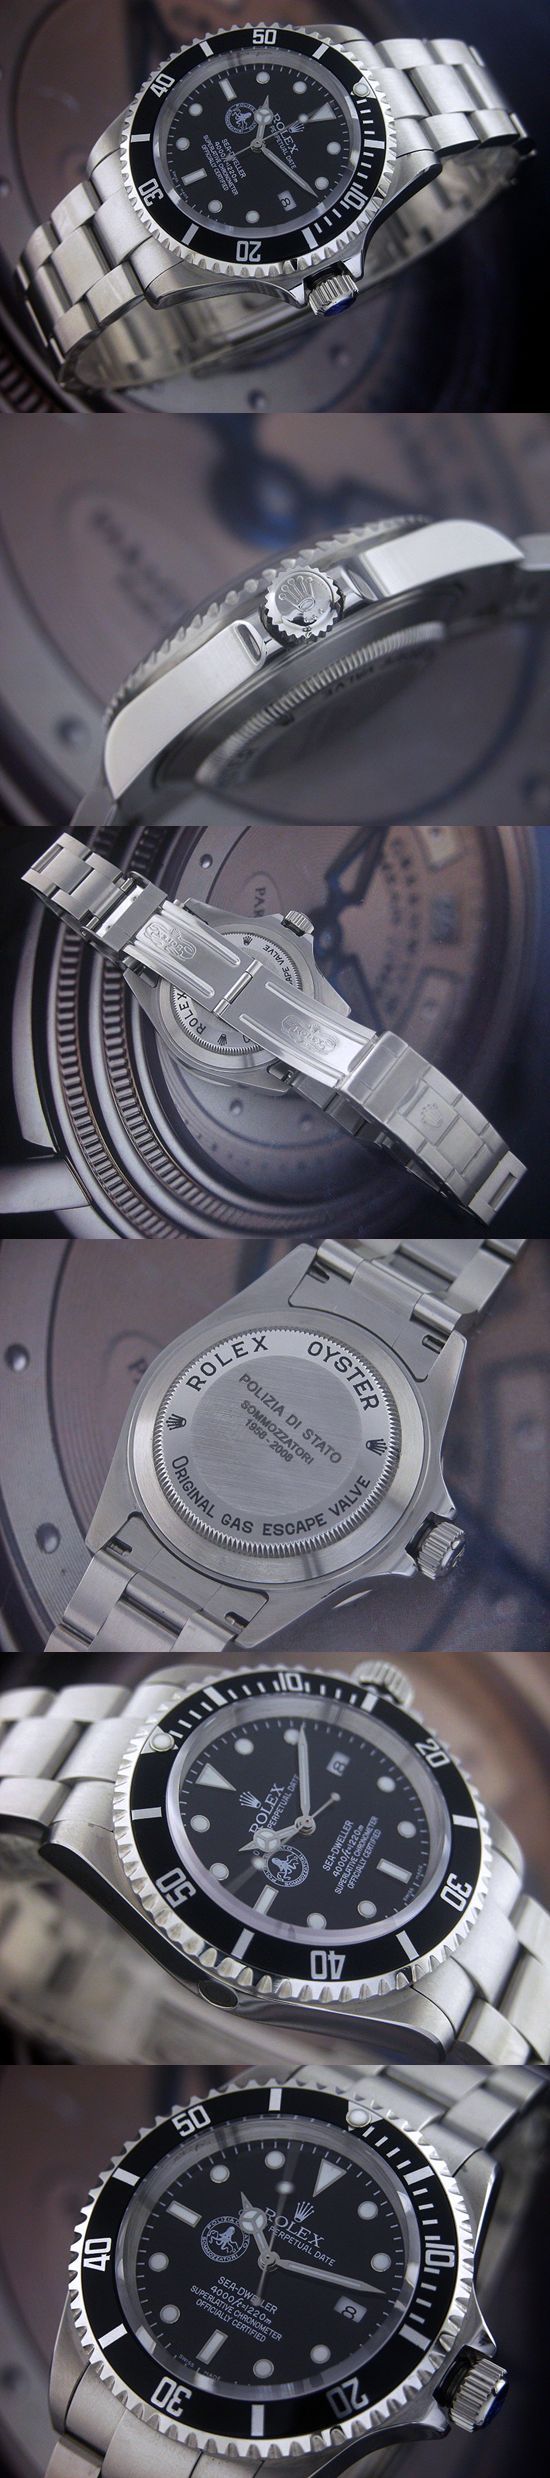 おしゃれなブランド時計がロレックス-シードゥエラー-ROLEX-16600-7-男性用を提供します.